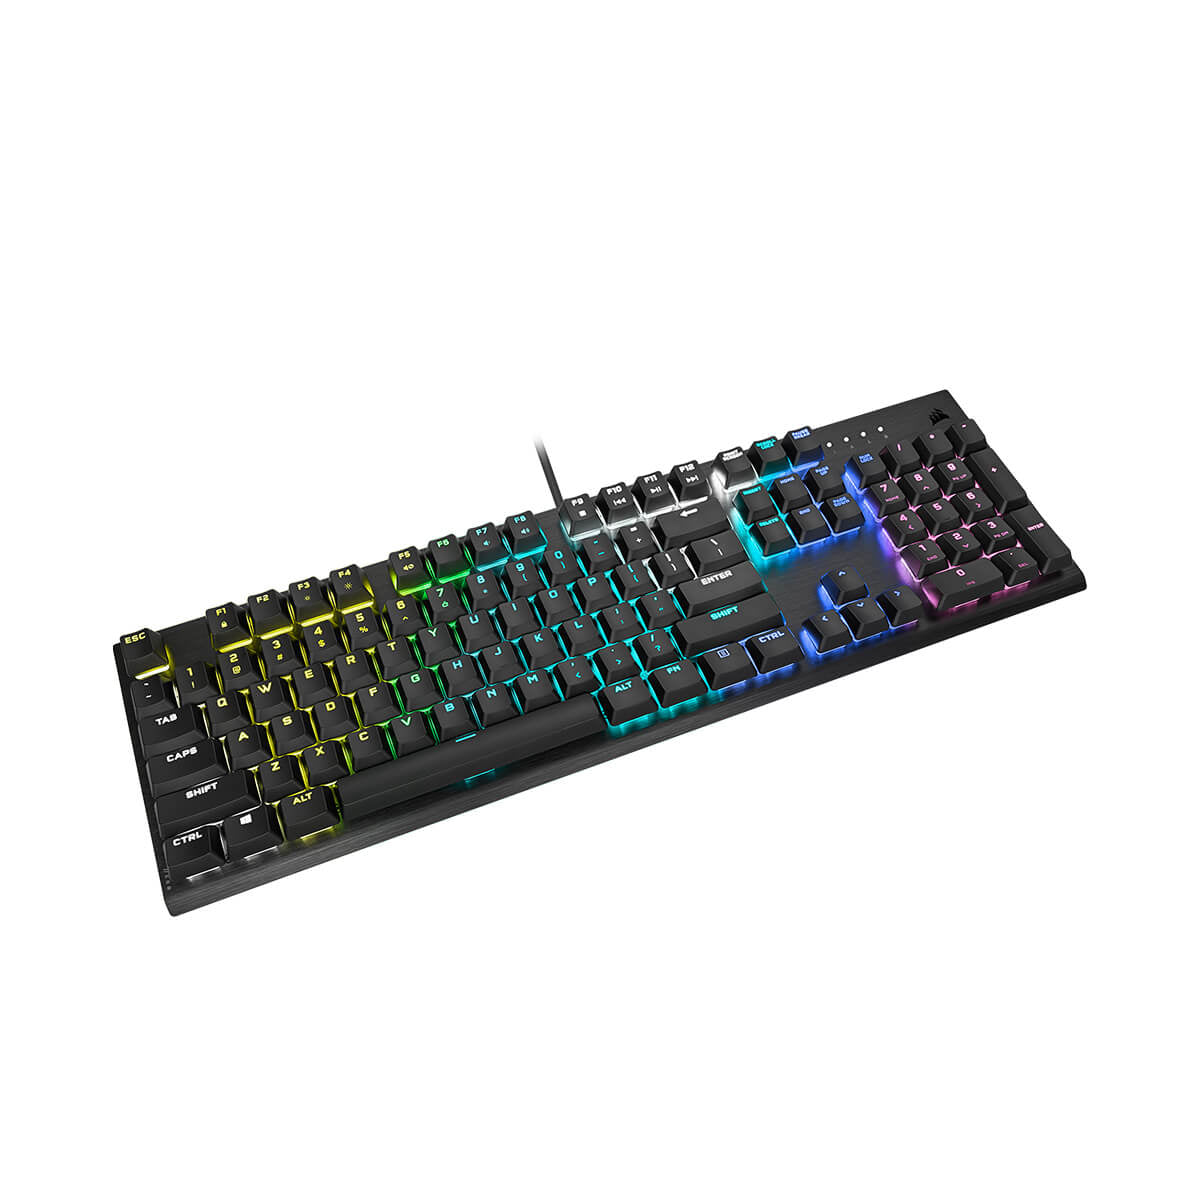 Corsair K60 RGB Pro low profile mechanical gaming keyboard